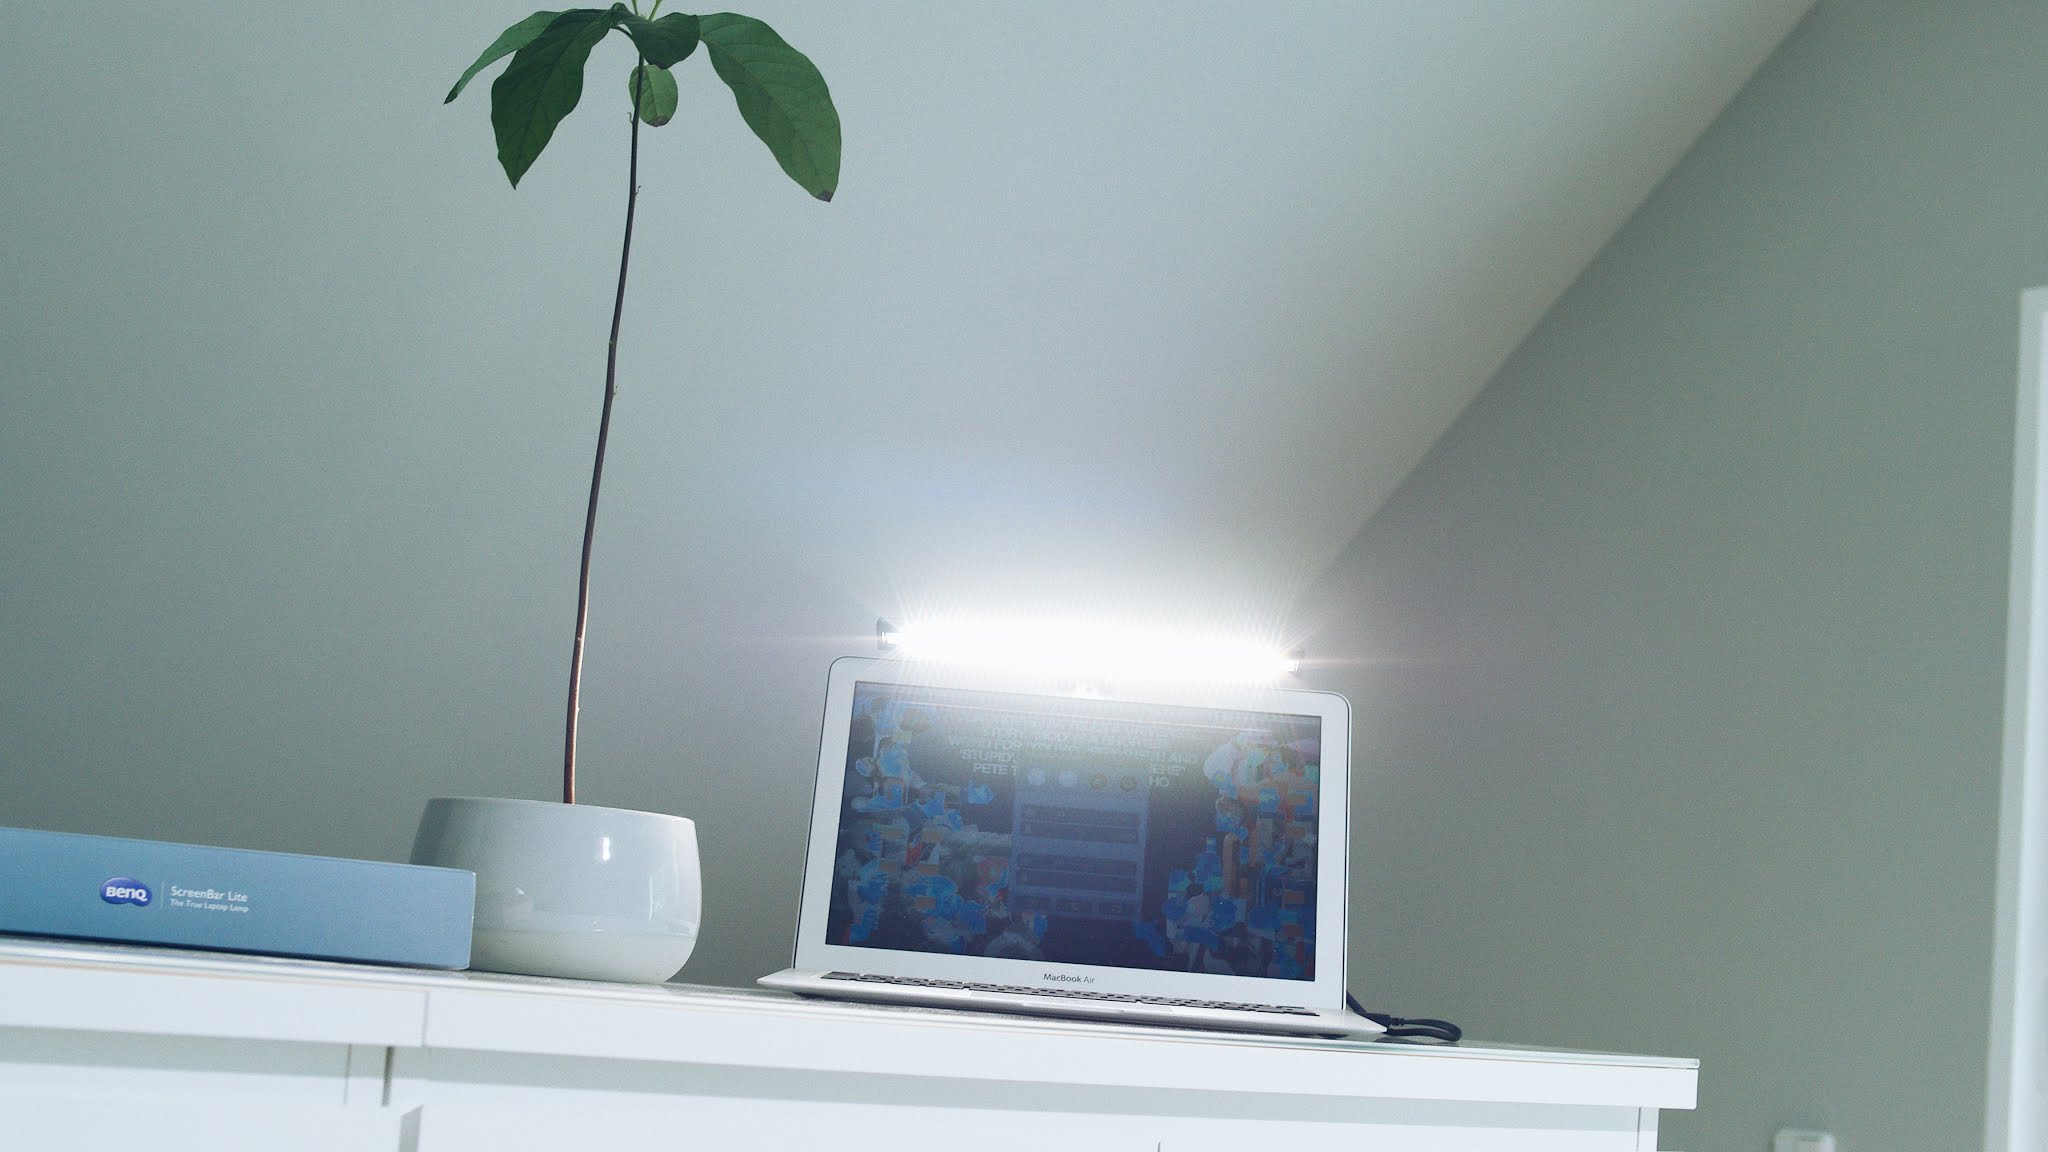 Die BenQ ScreenBar Lite | Eine mobile LED-Arbeitslampe nicht nur für digitale Nomaden